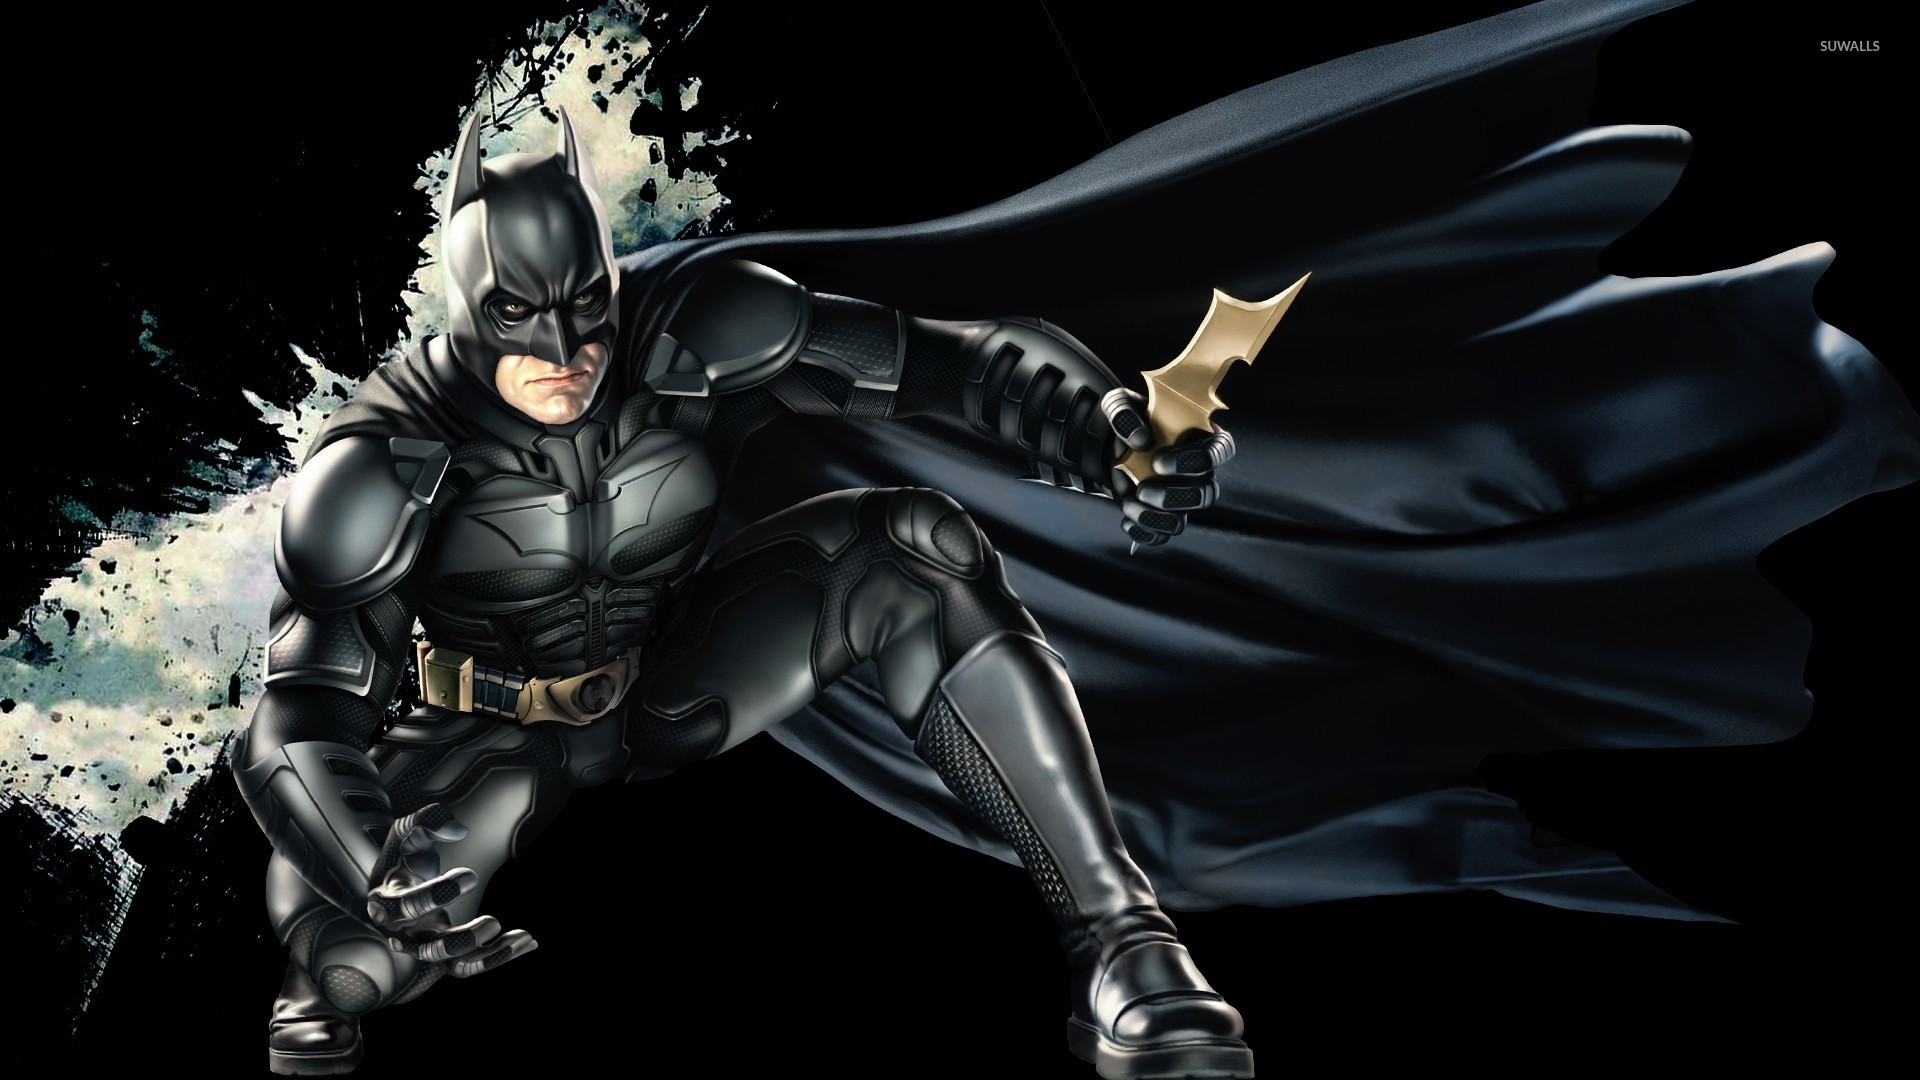 Batman Arkham Knight Wallpaper Download | MobCup